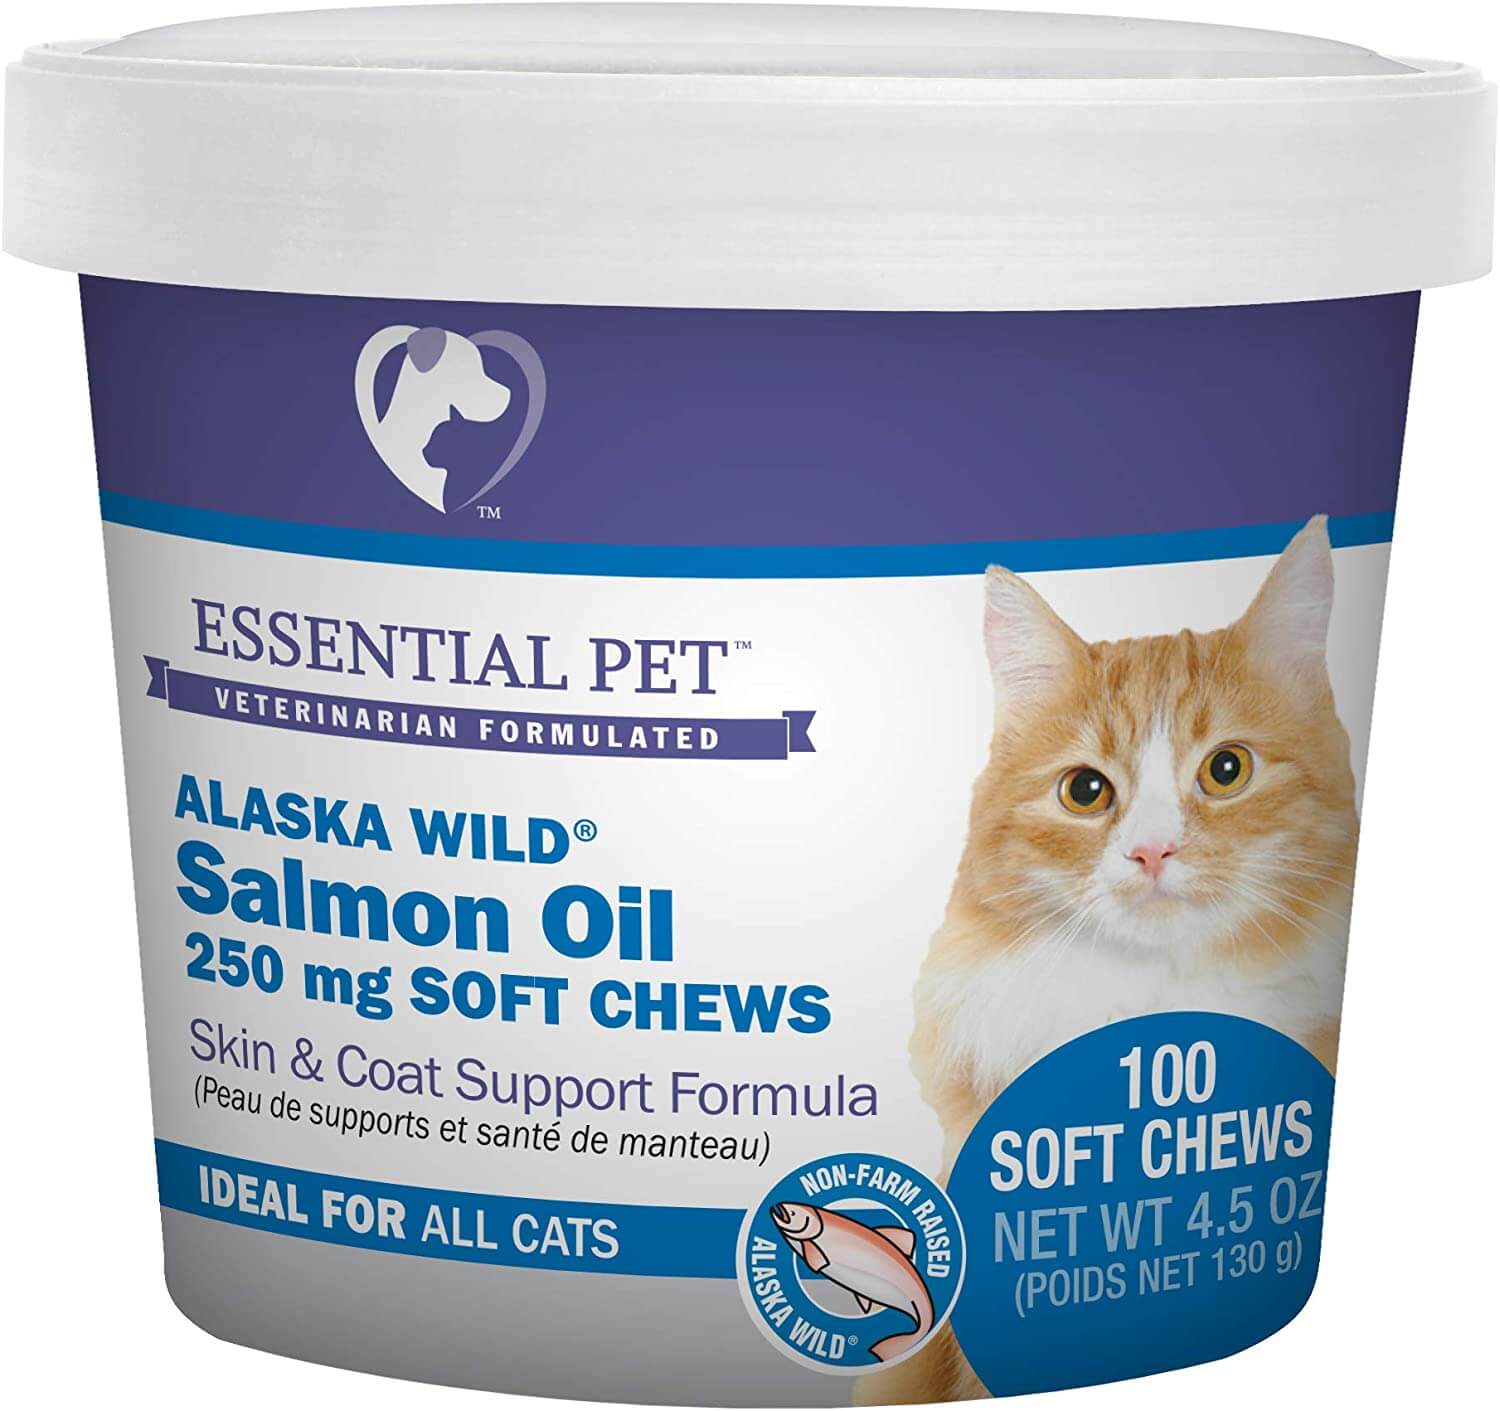 Essential Pet Alaska Wild Salmon Oil Soft Chews